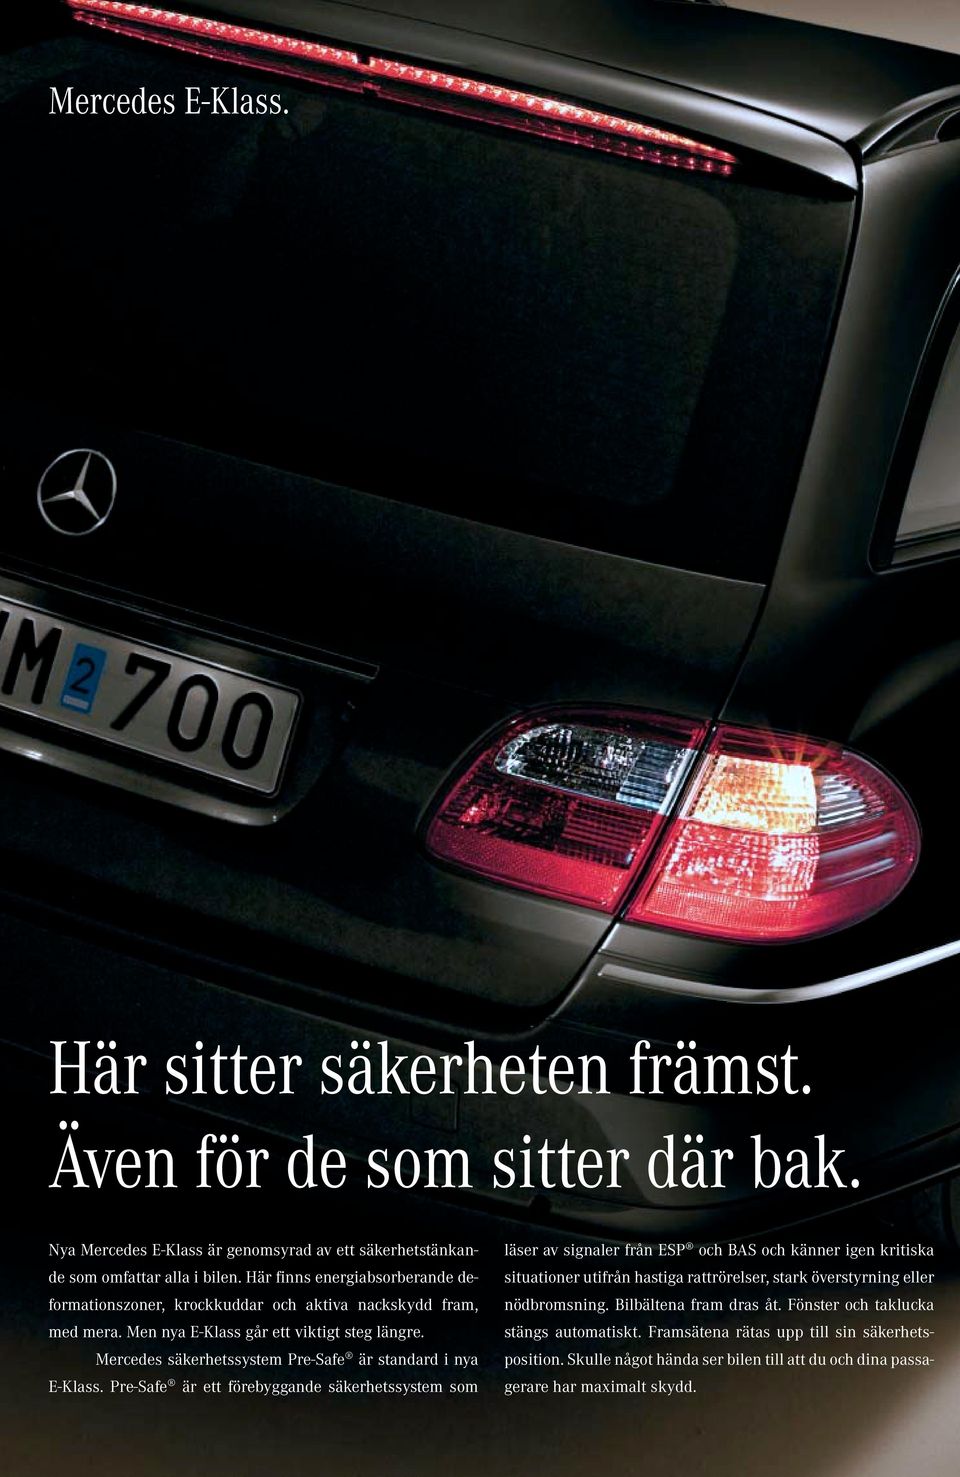 Mercedes säkerhetssystem Pre-Safe är standard i nya E-Klass.